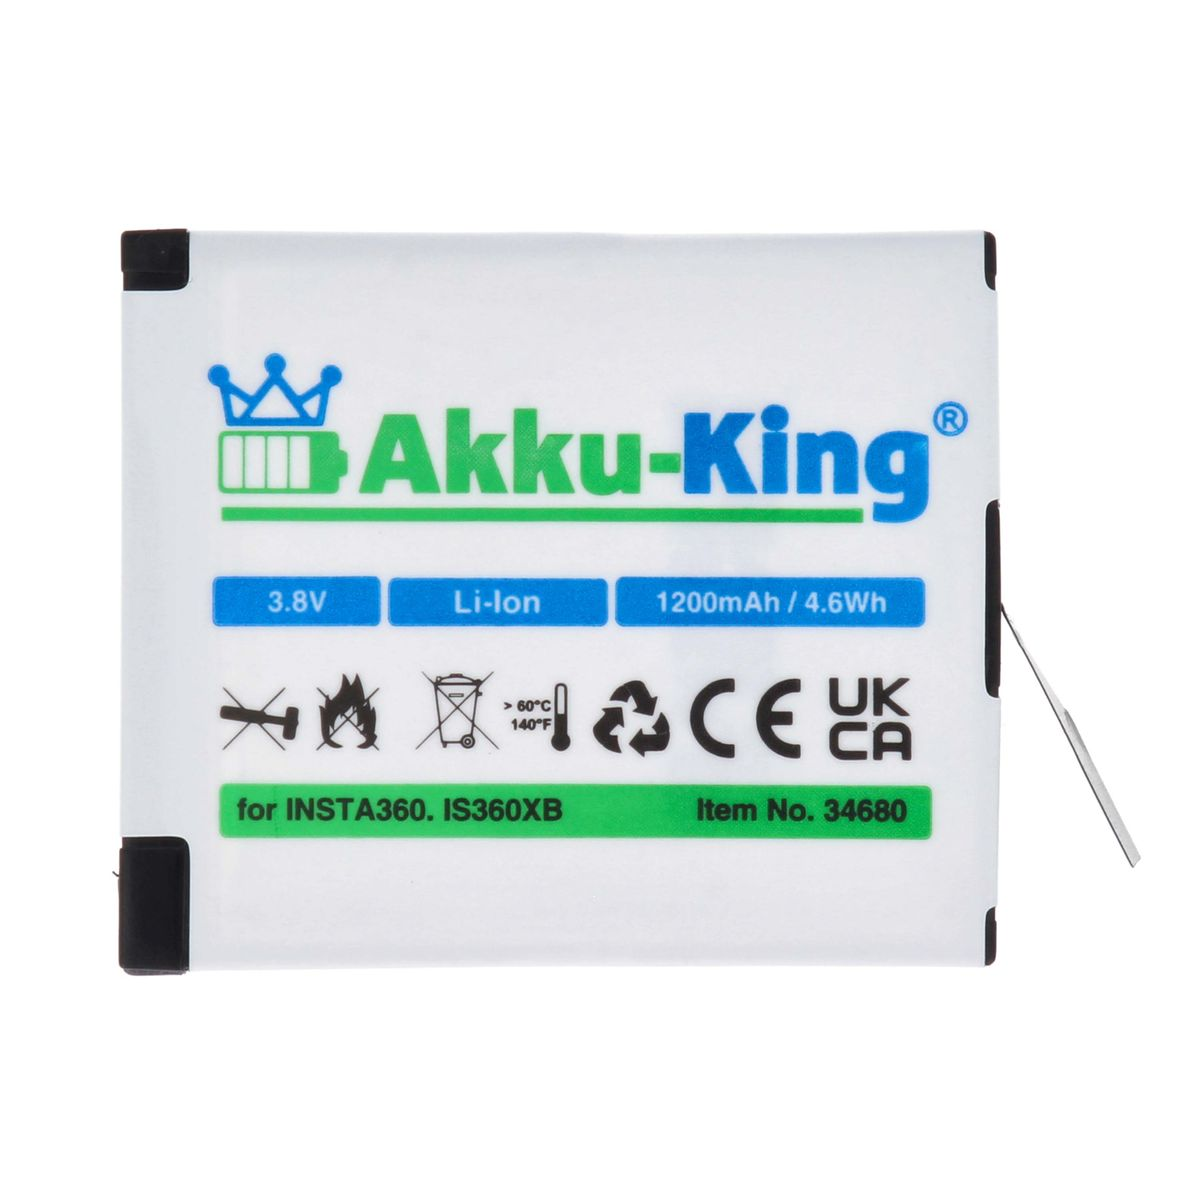 1200mAh IS360XB AKKU-KING Insta360 Volt, mit Akku Kamera-Akku, 3.8 Li-Ion kompatibel